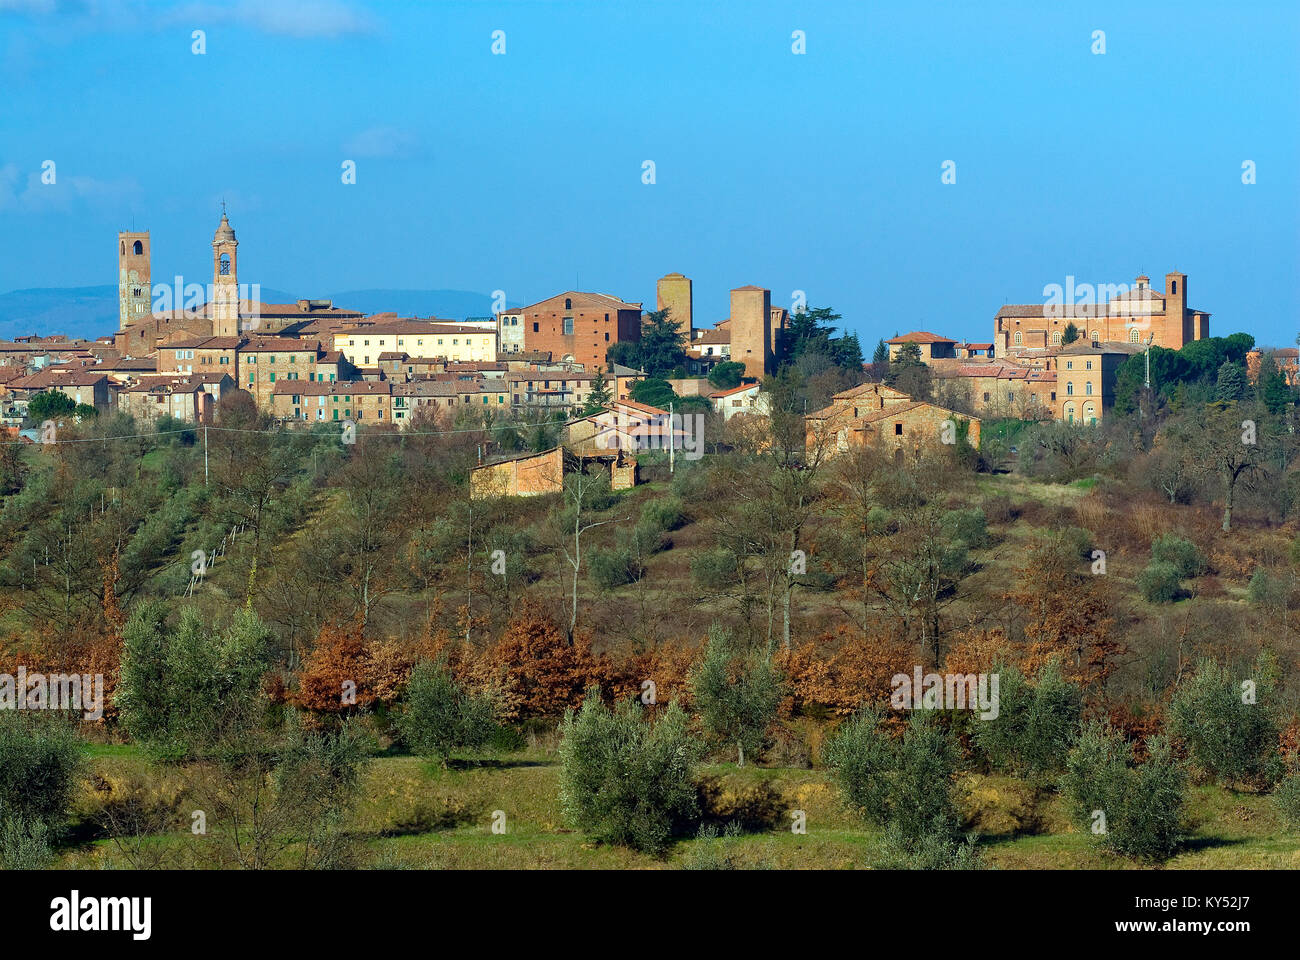 Città della Pieve, Umbrien, Italien Stockfoto